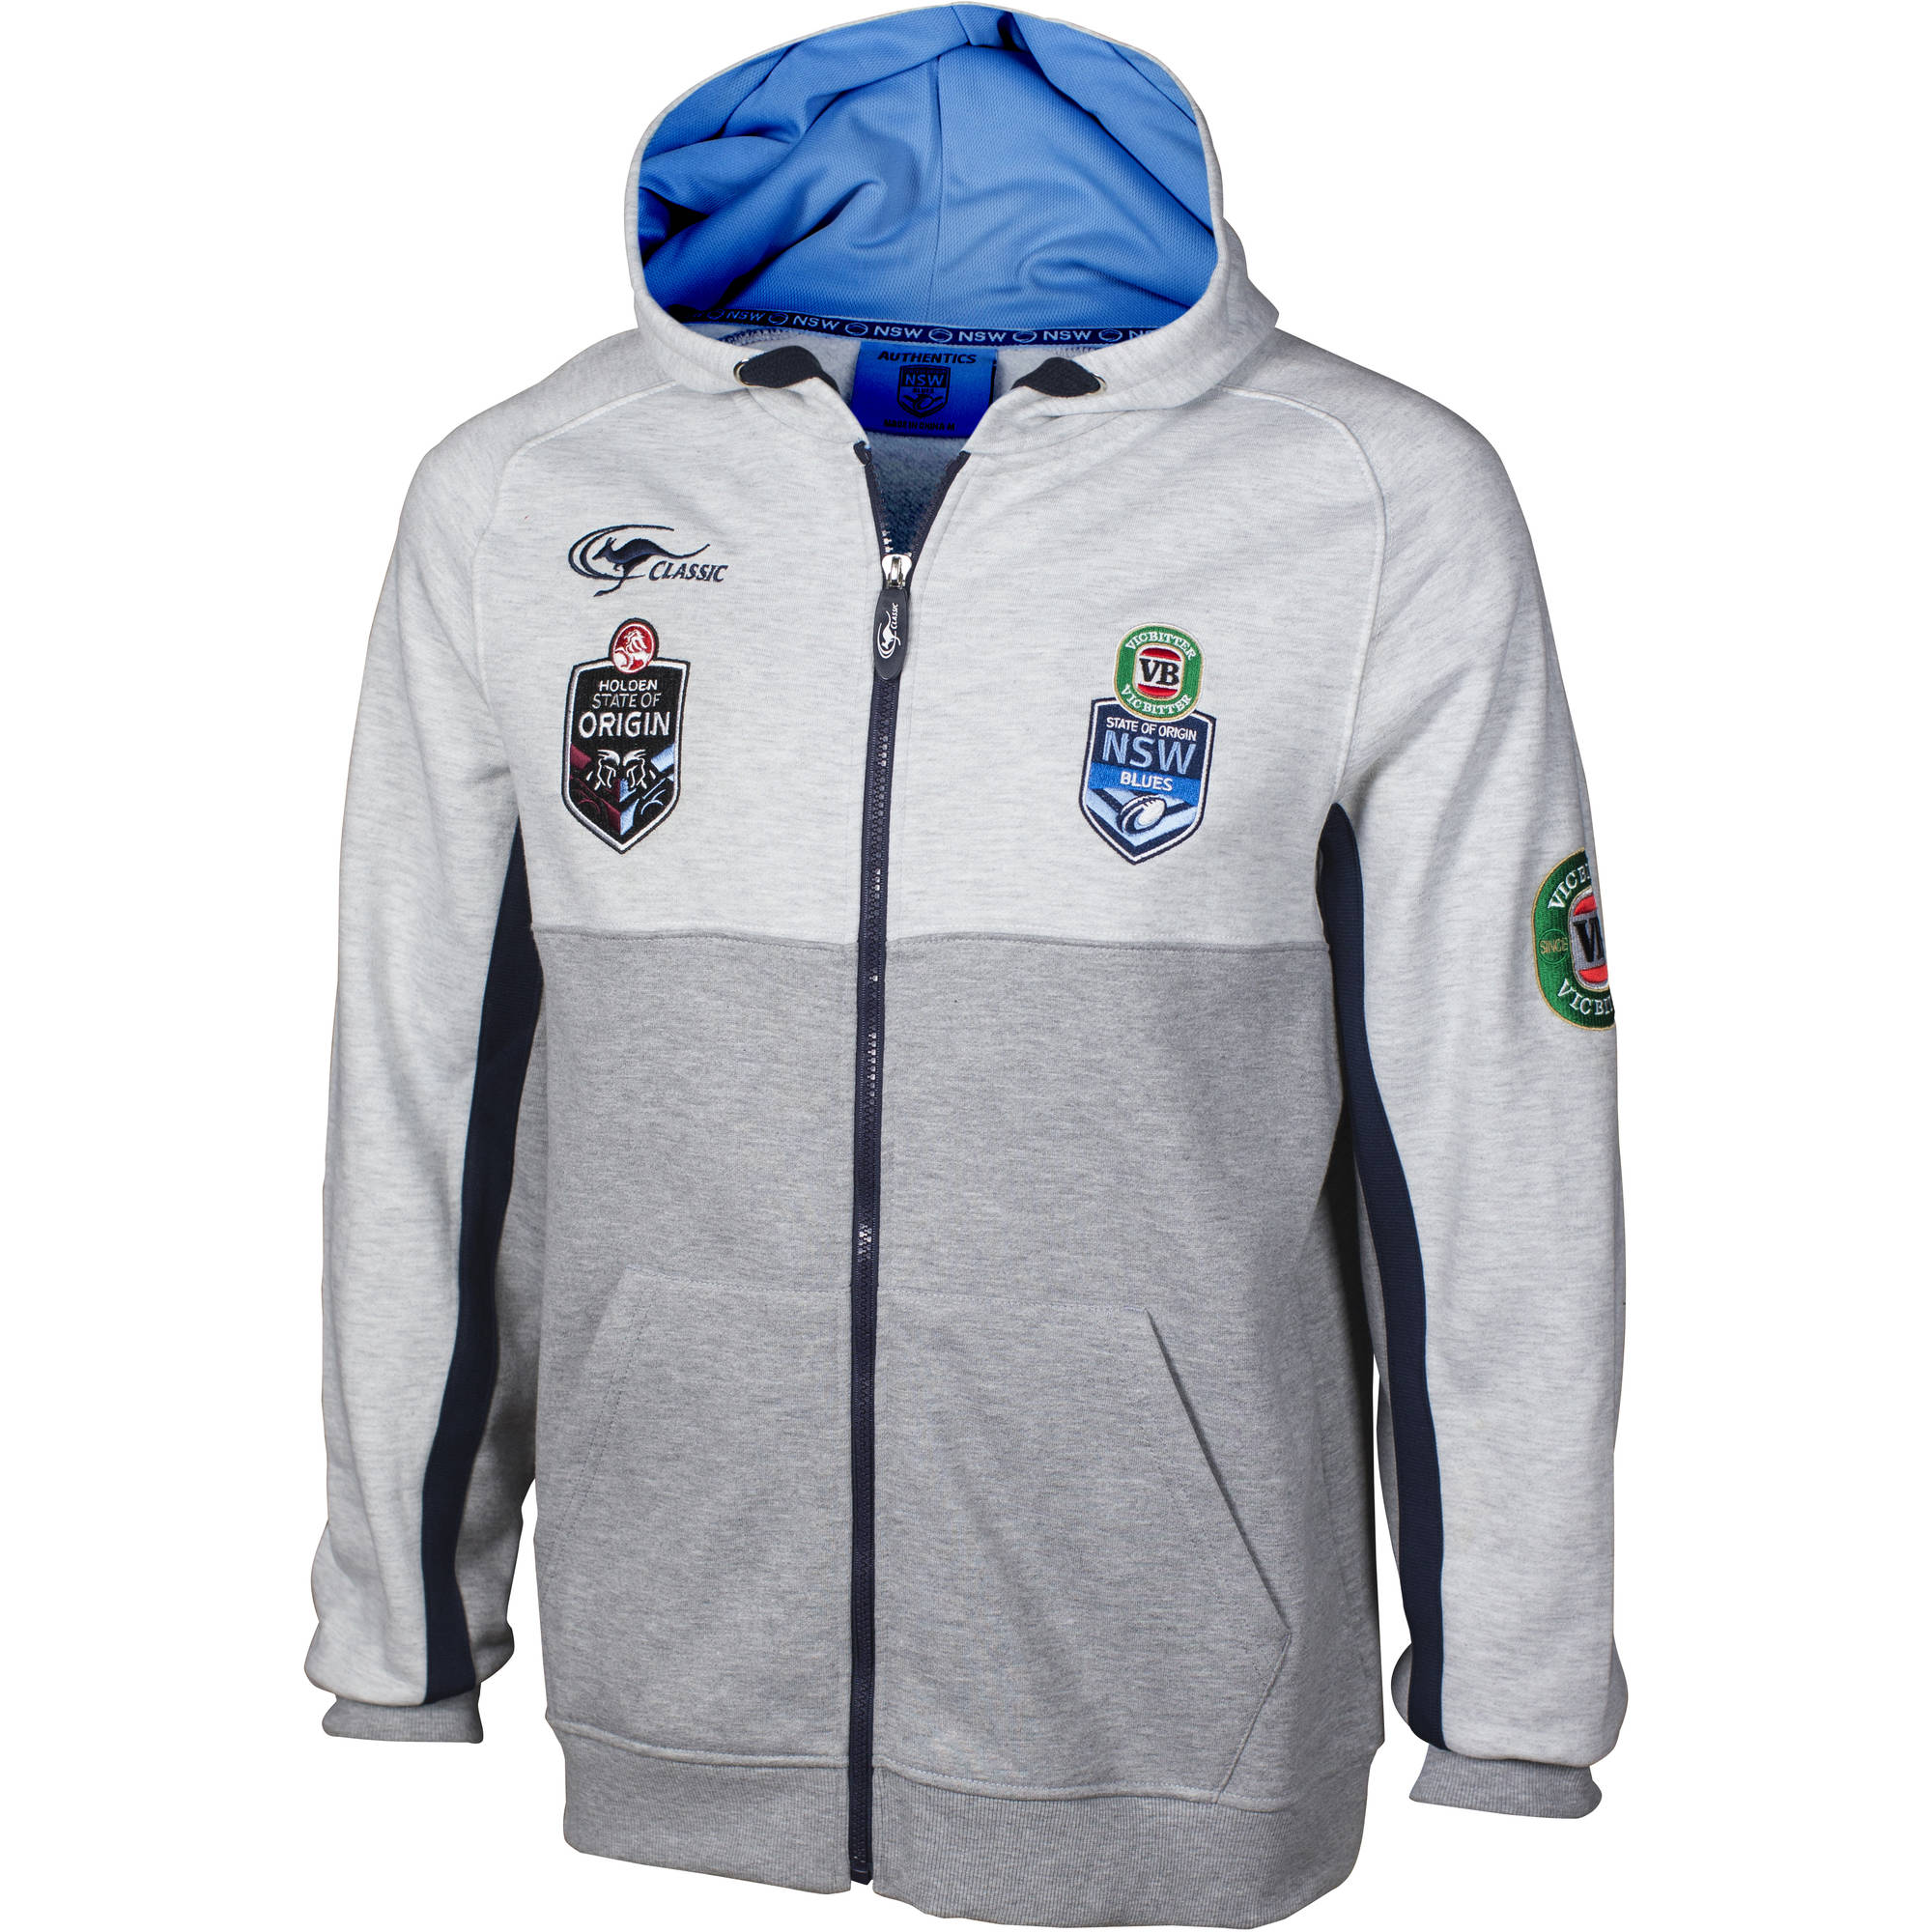 New South Wales NSW Blues State of Origin 2015 Grey Jacket Hoodie Hoody